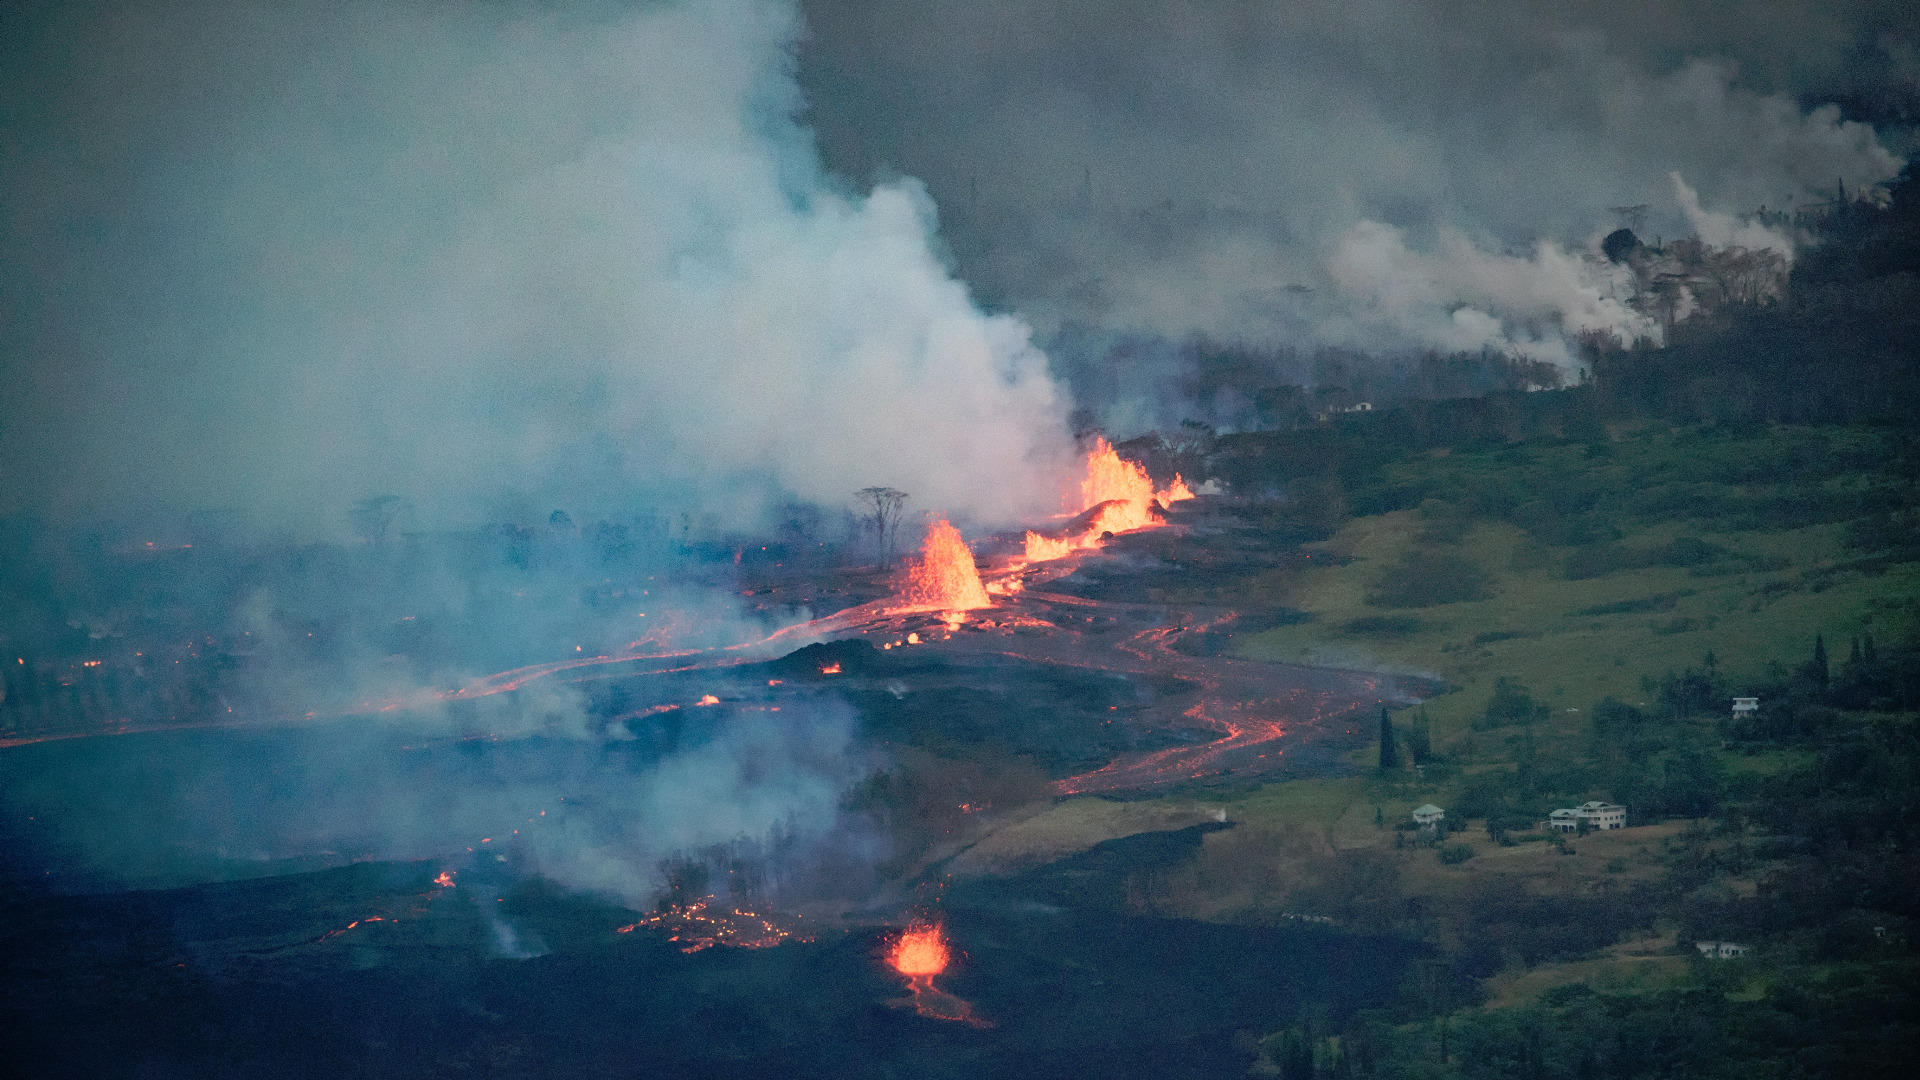 Ситуацията на Хавайте се влошава заради изригващия вулкан Килауеа чиято